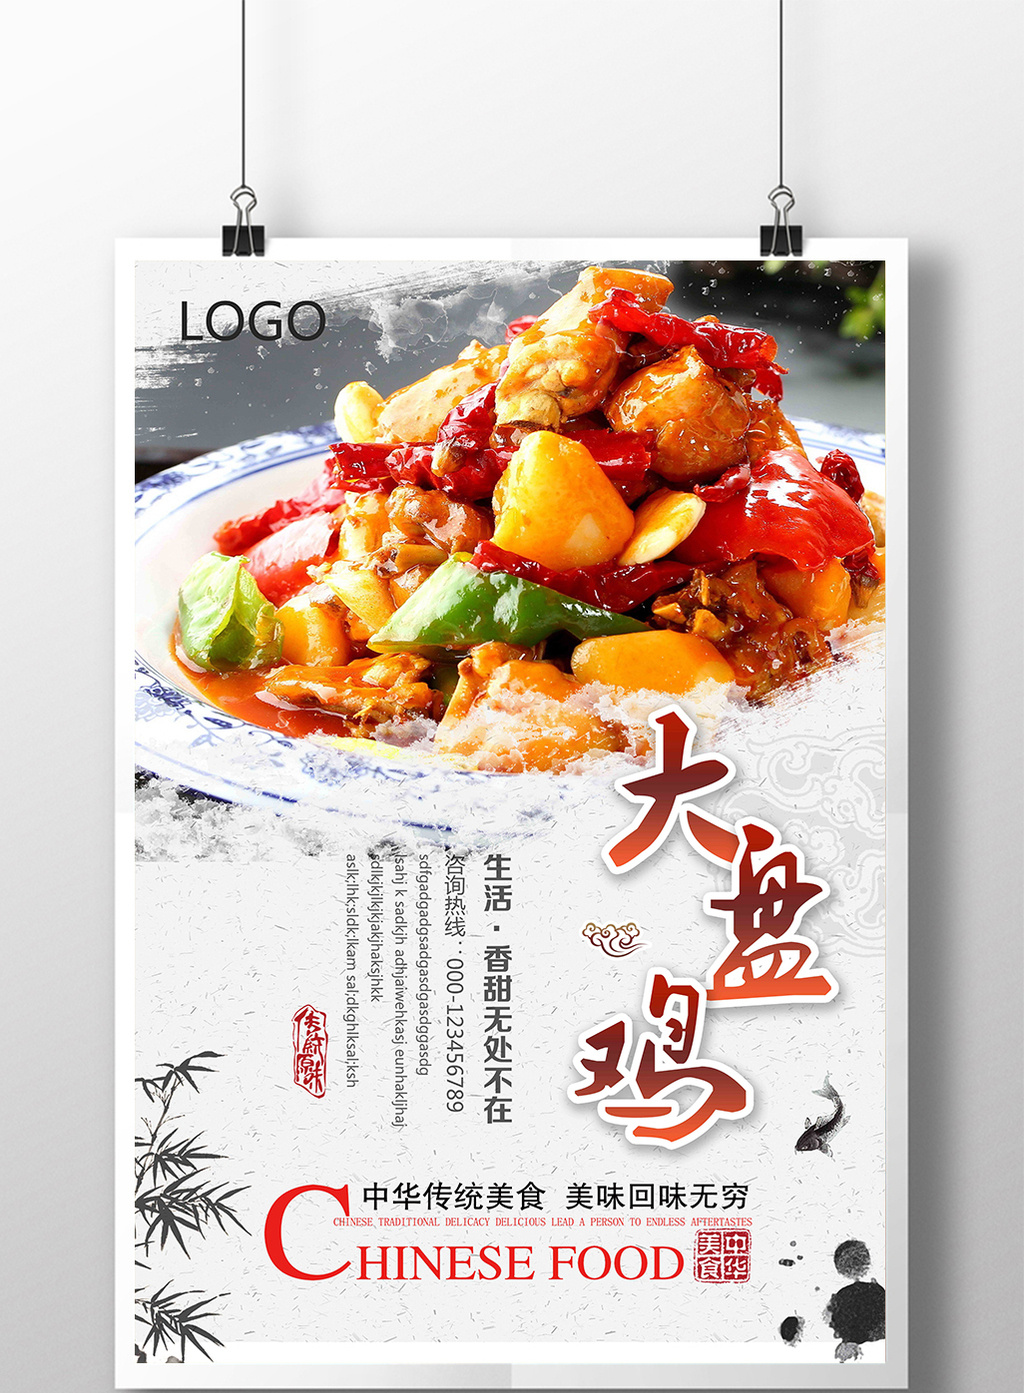 包图网提供精美好看的新疆大盘鸡中国风美食海报素材免费下载,本次